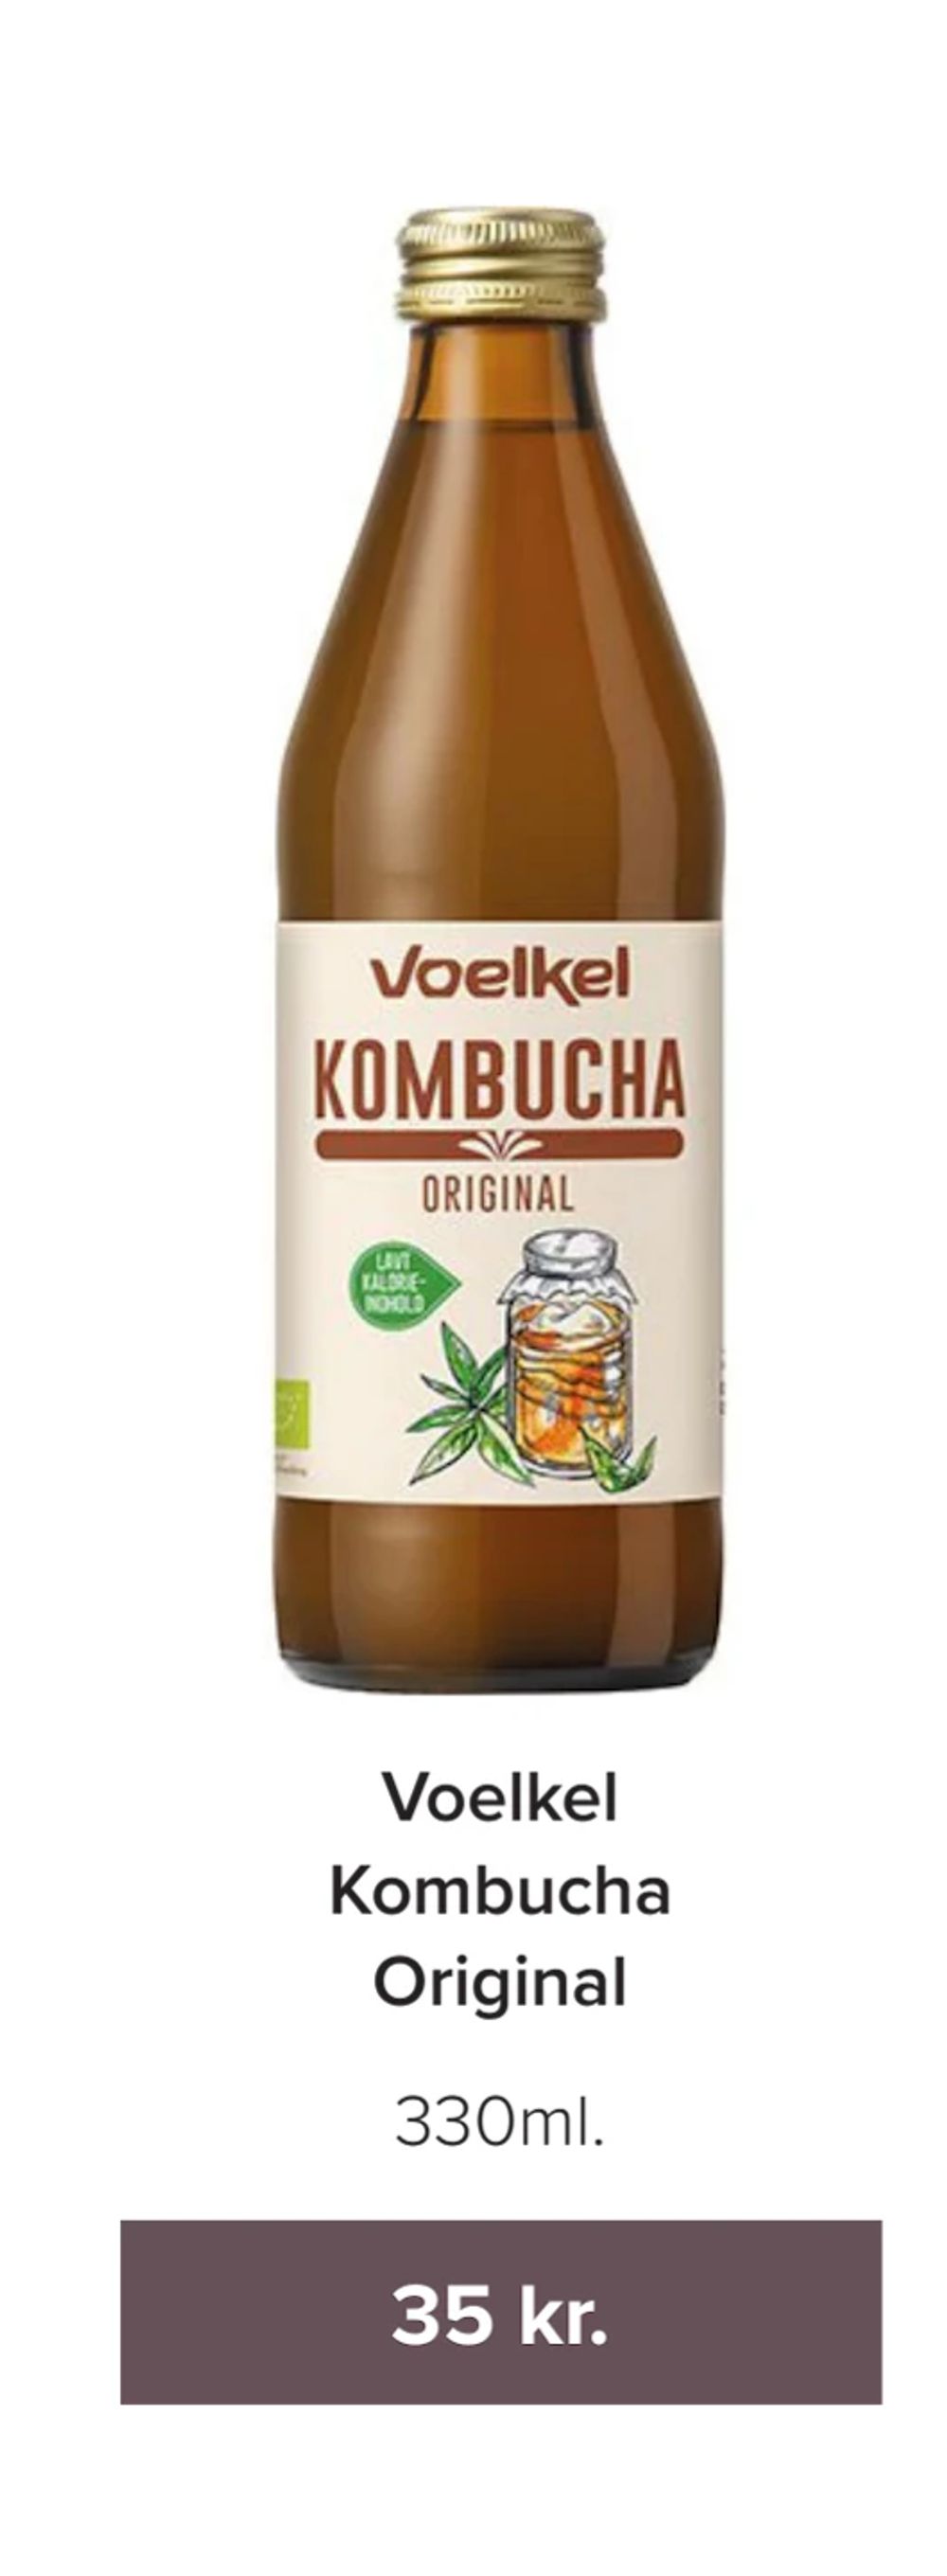 Tilbud på Voelkel Kombucha Original fra Helsemin til 35 kr.